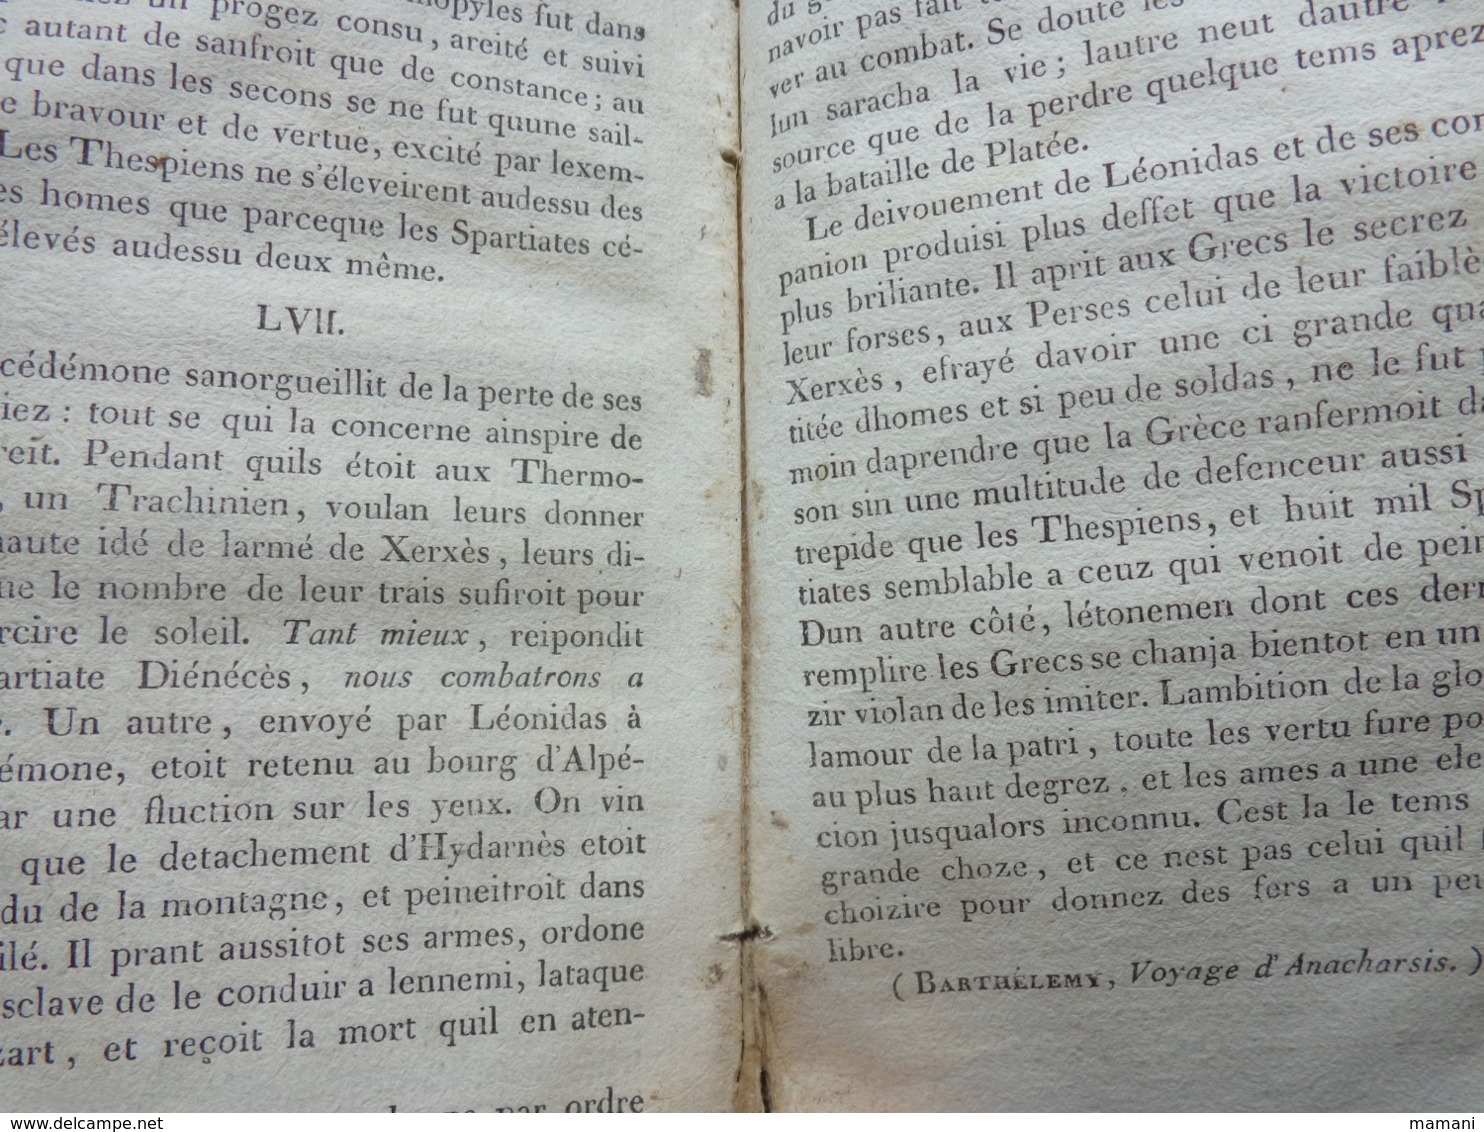 nouvelle cacographie 24 eme edition en 1824 -par charles constant letellier